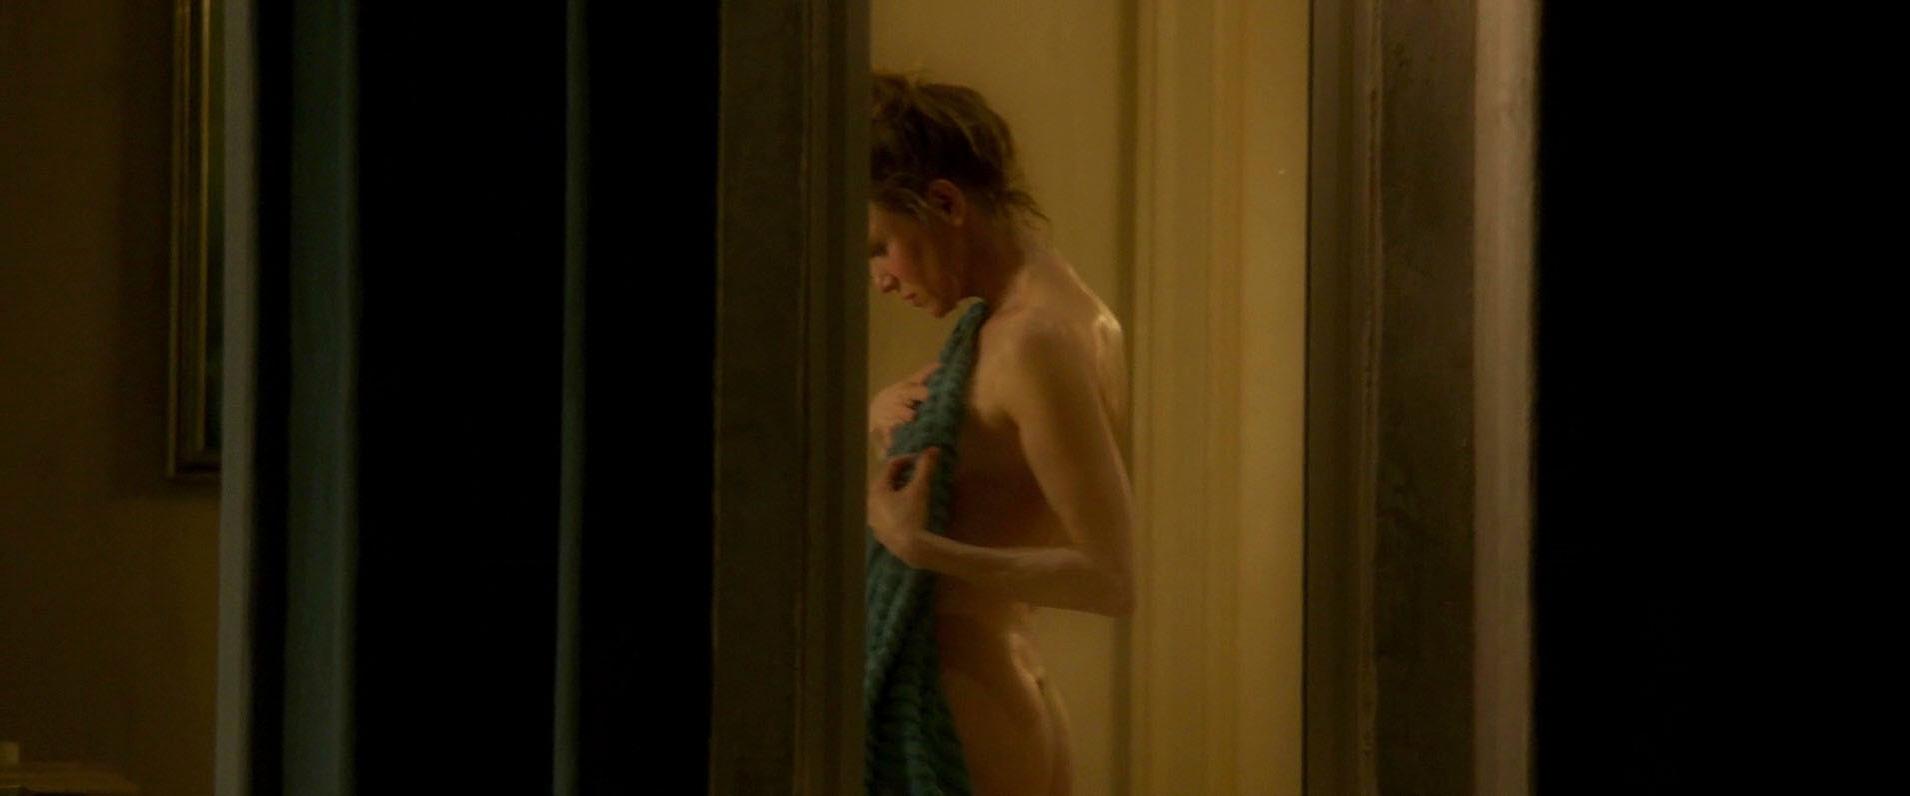 Renee been ever has nude zellweger Oscarwinner nudity